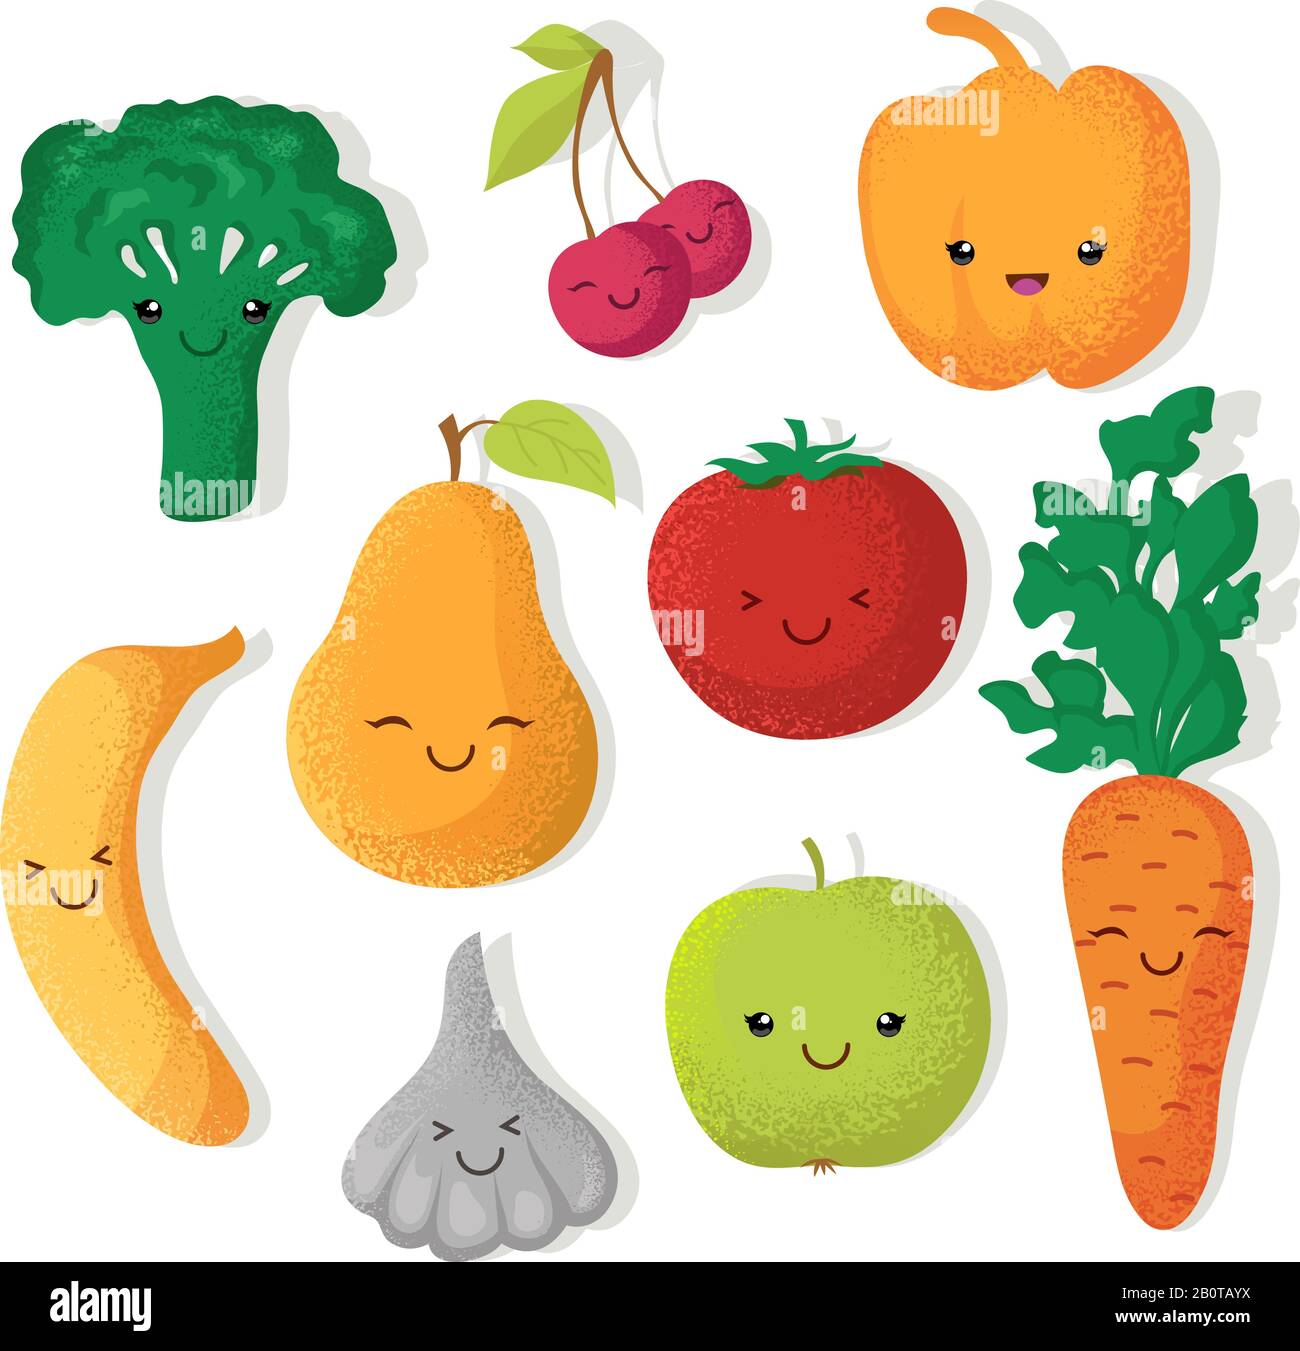 Dessins animés de drôles de fruits et de légumes personnages vectoriels. Illustration des fruits et légumes, de la tomate et de la poire Illustration de Vecteur